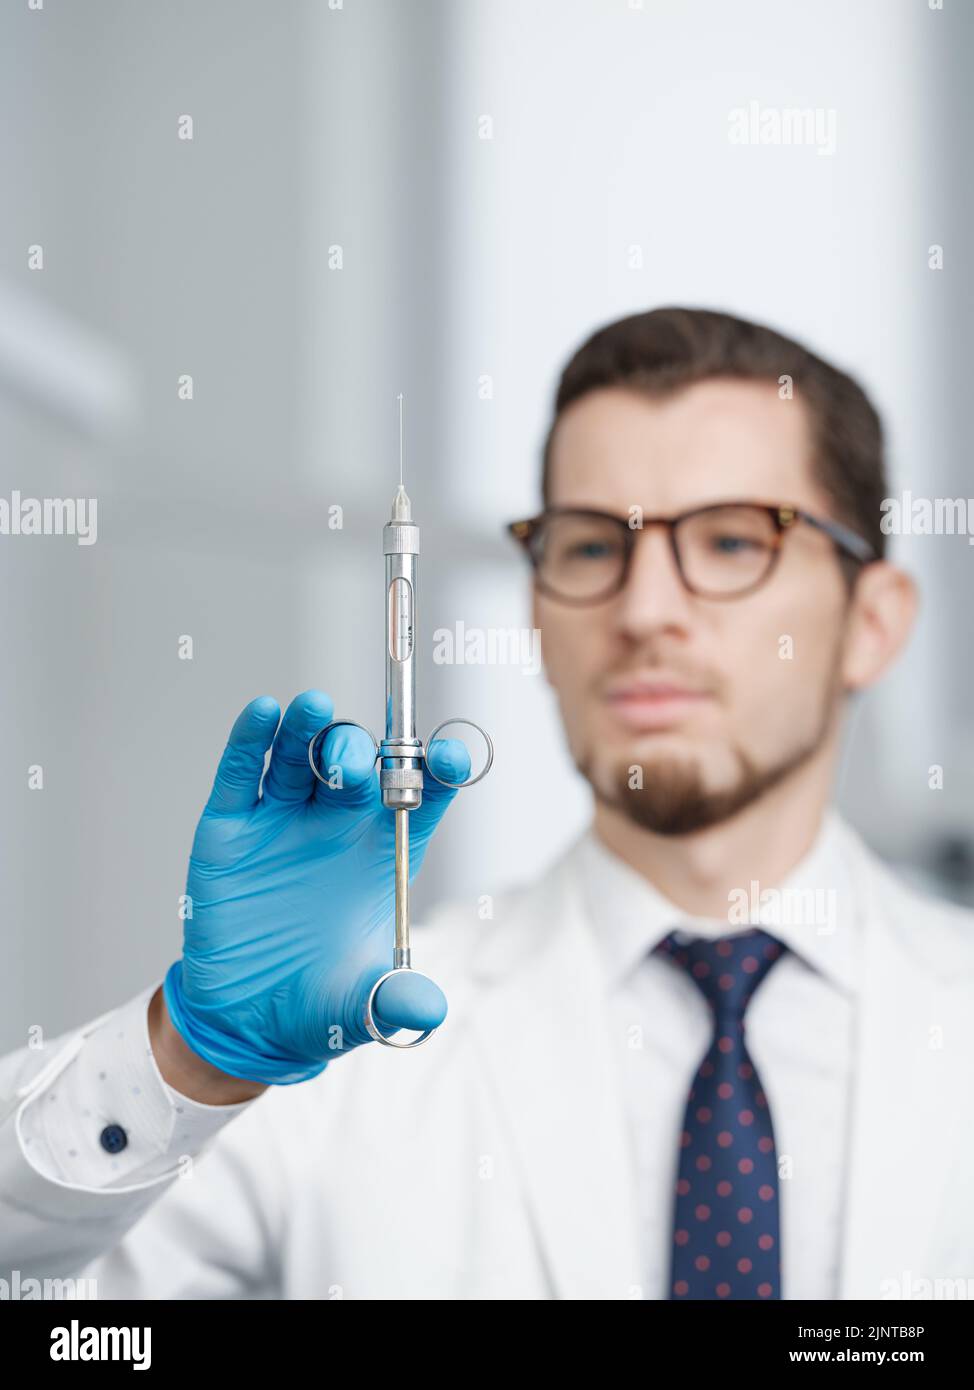 Gros plan de la seringue dans les mains d'un médecin Banque D'Images